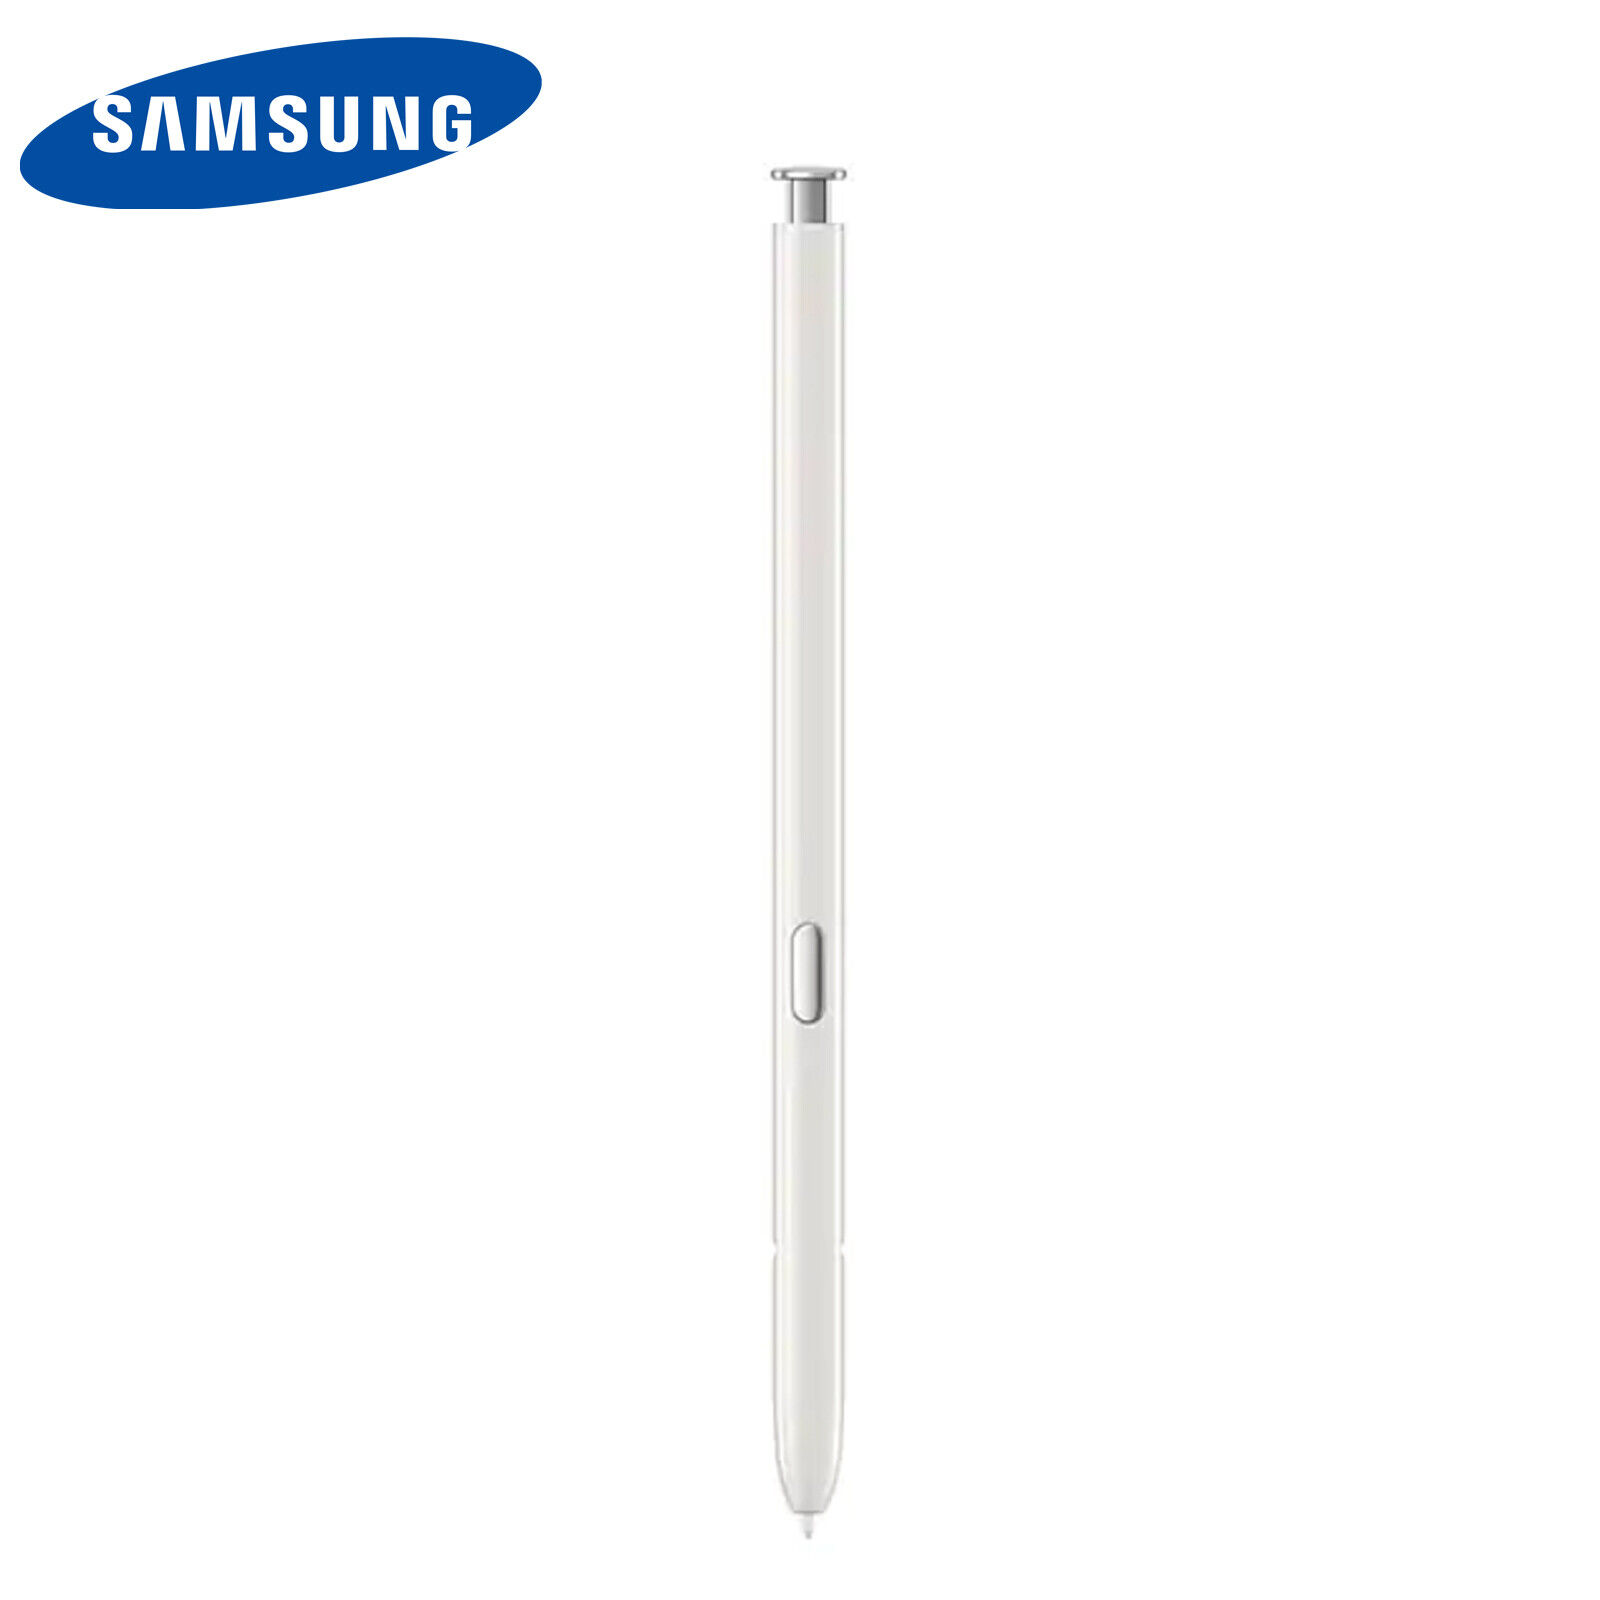 Samsung Bluetooth S Pen EJ-PN970 Retail Box for Galaxy Note10, Note10+,10+ 5G Klasyczne, wybuchowe kupowanie